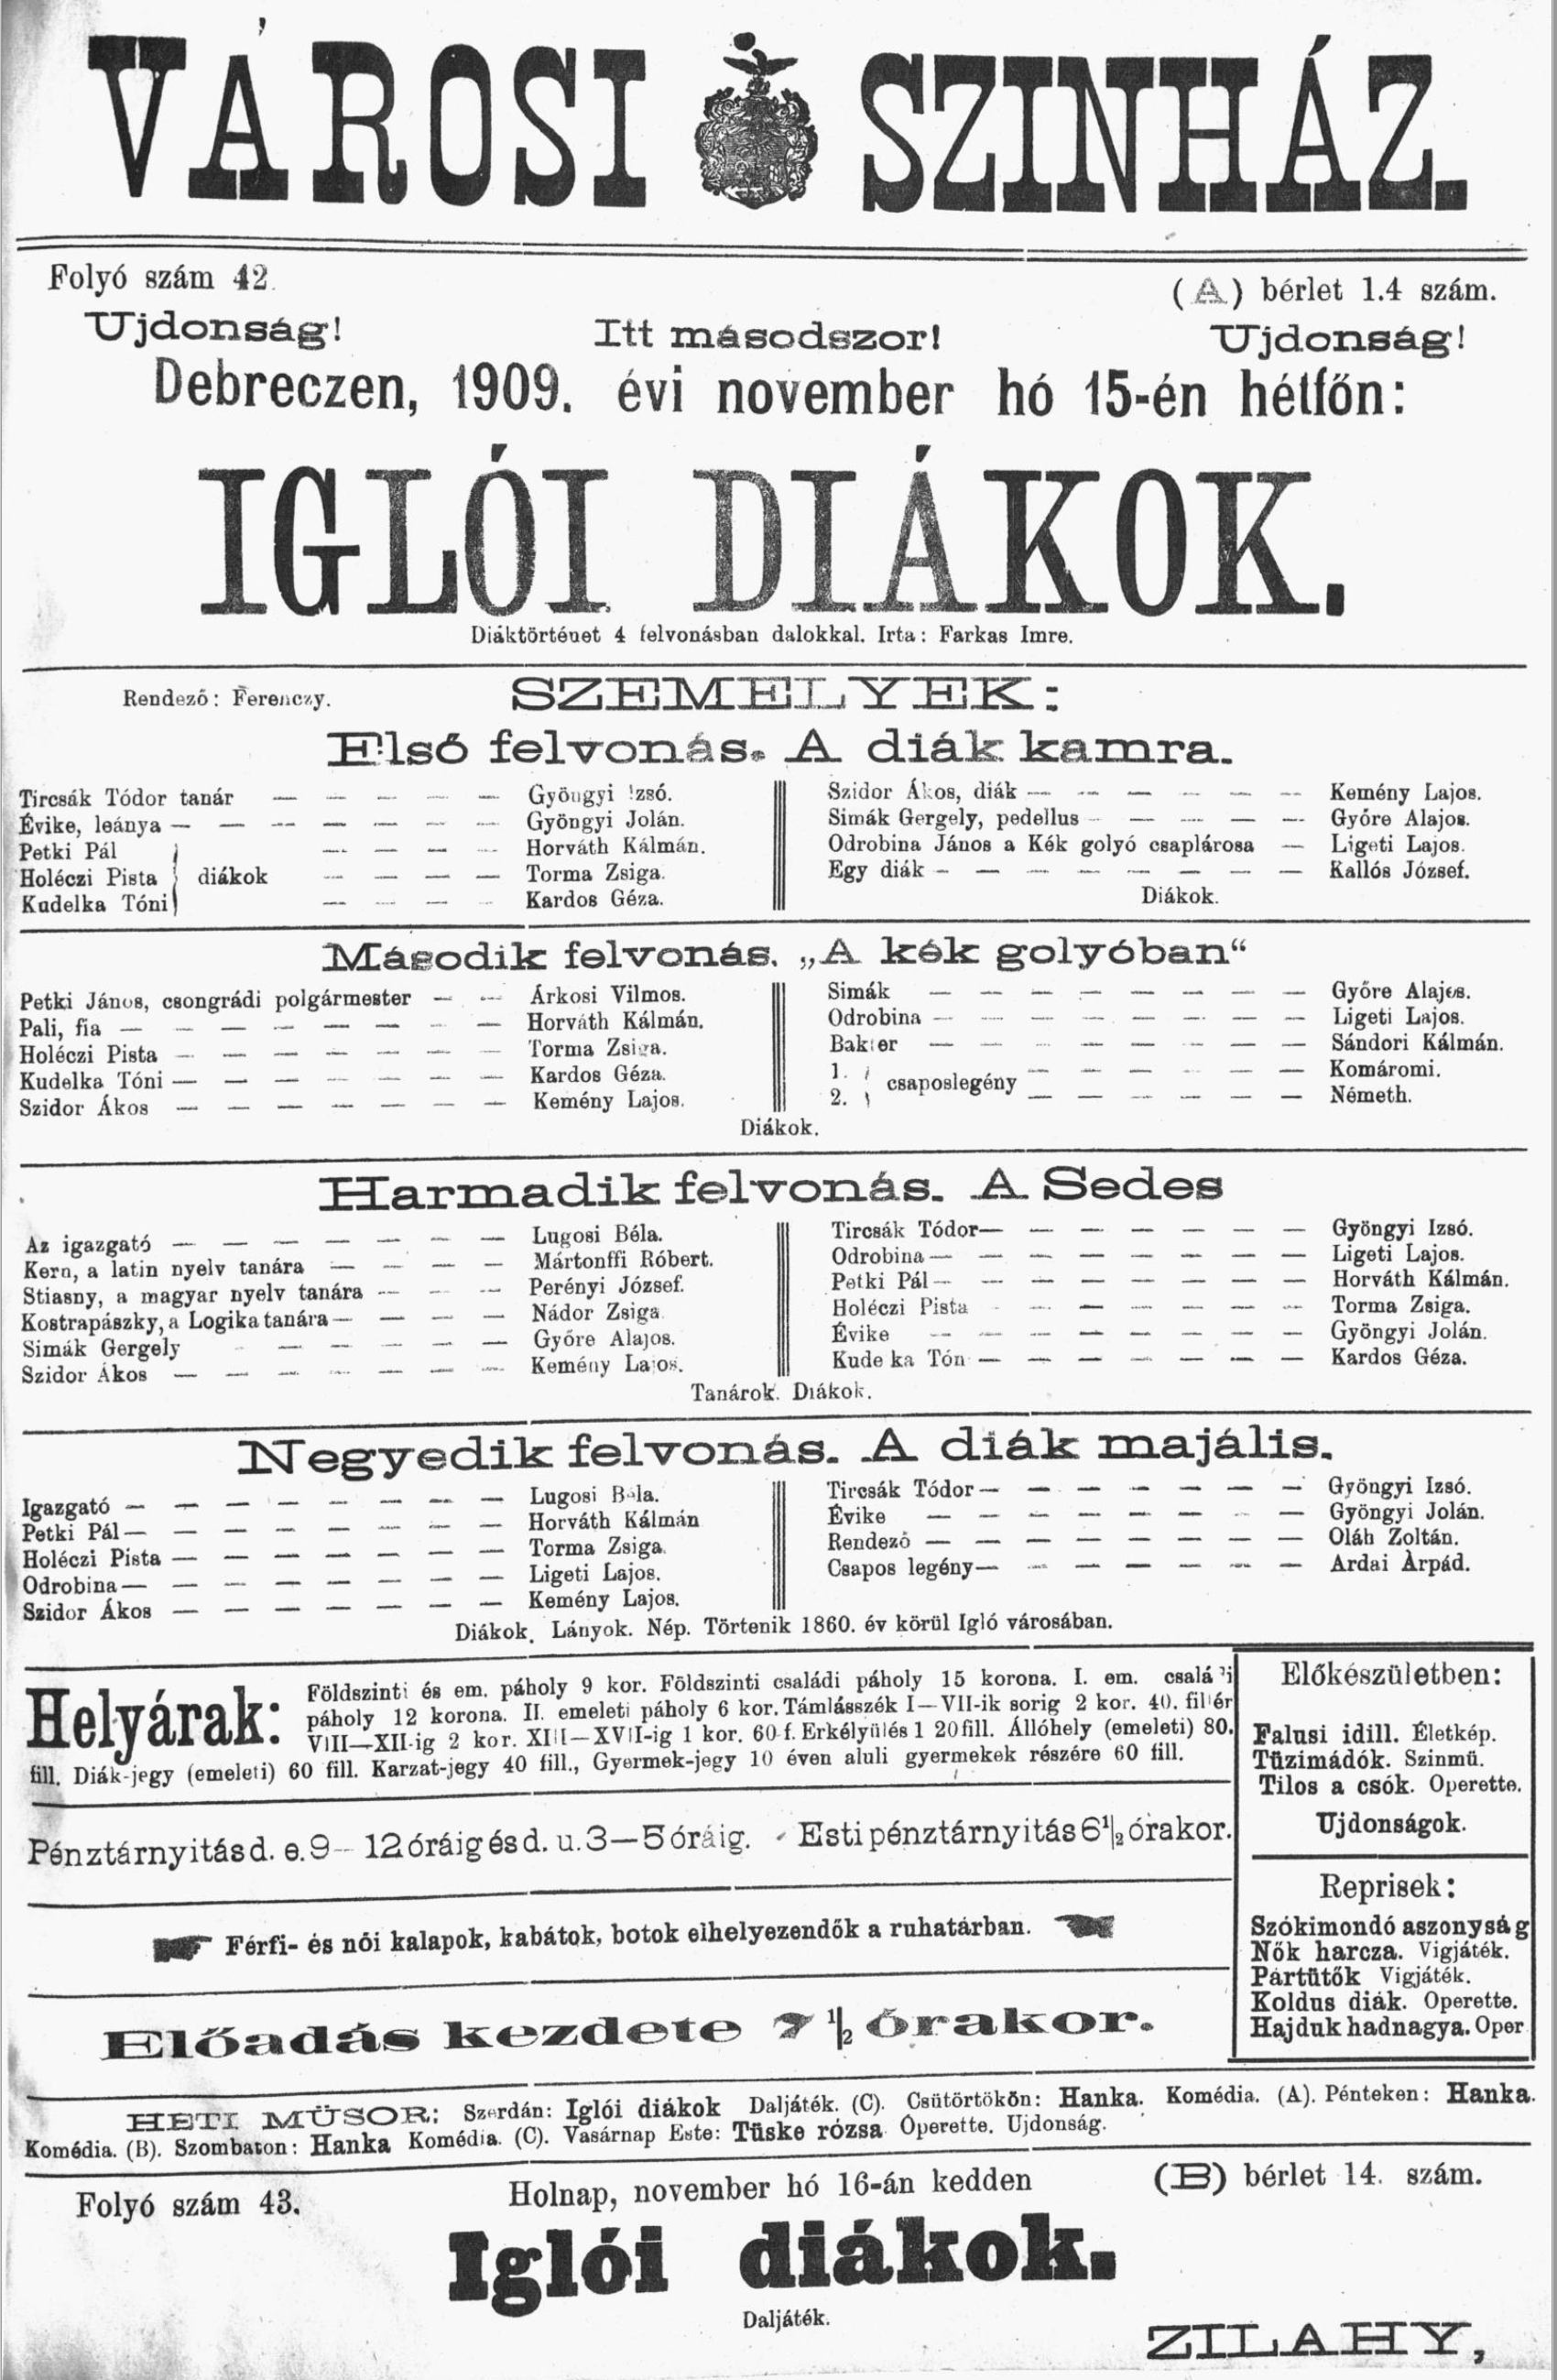 1909.nov.15 - igloi diakok - bibPLA00006545.png